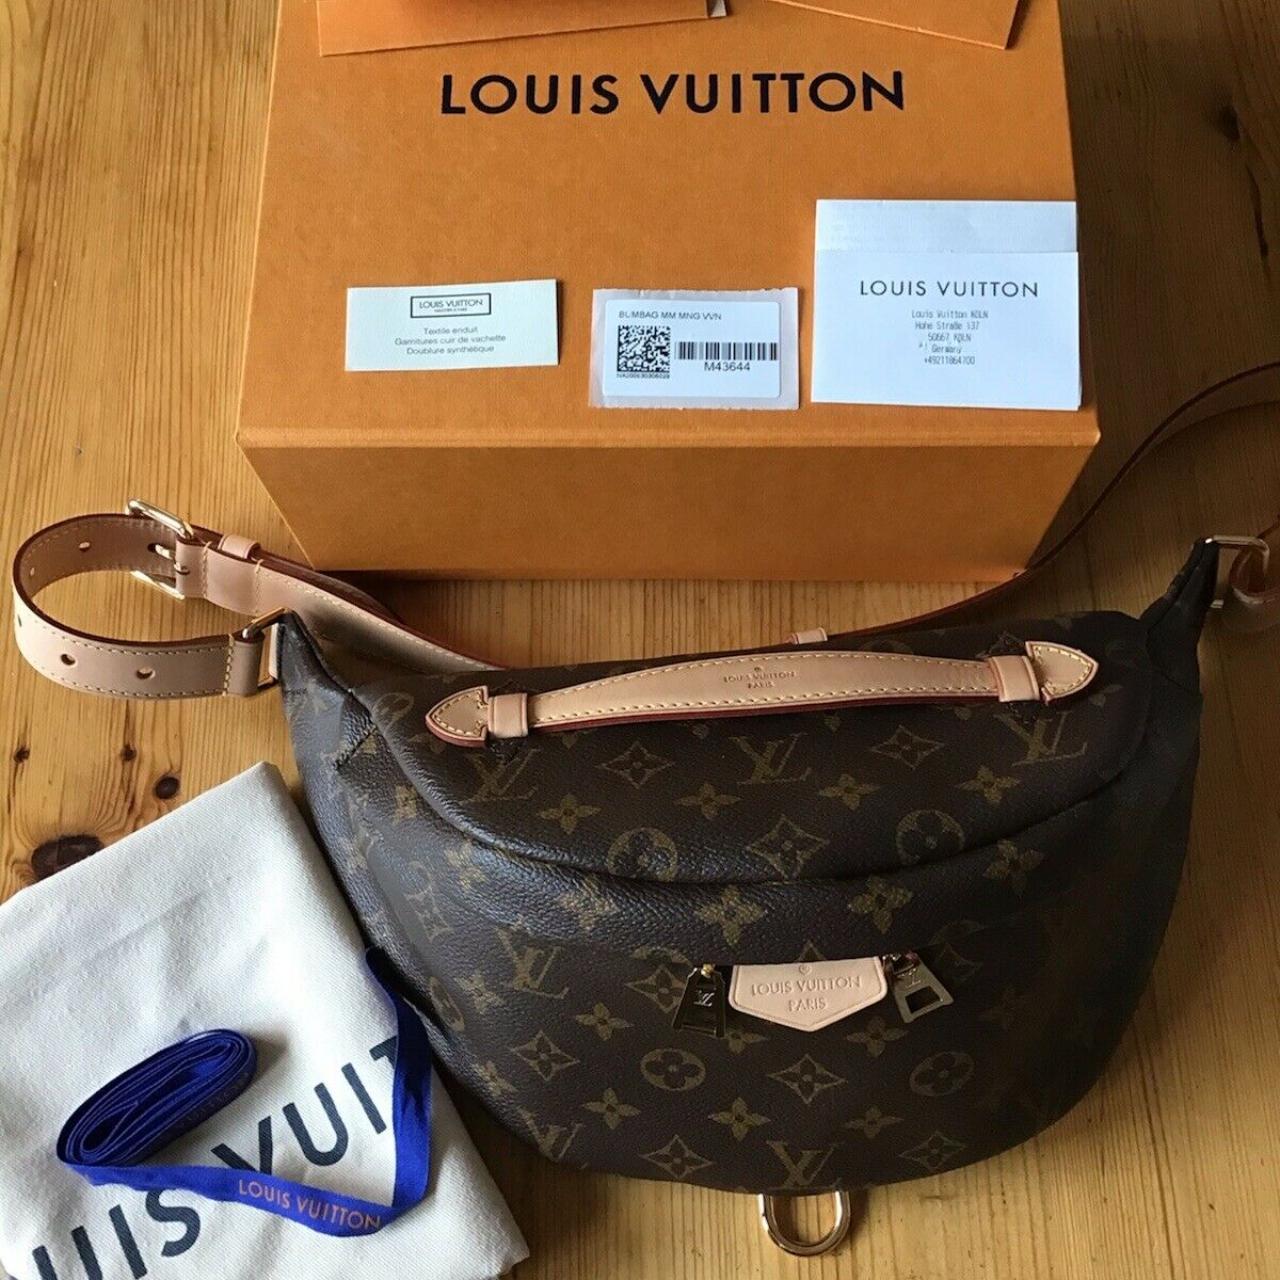 Louis Vuitton checkered cream belt - Depop